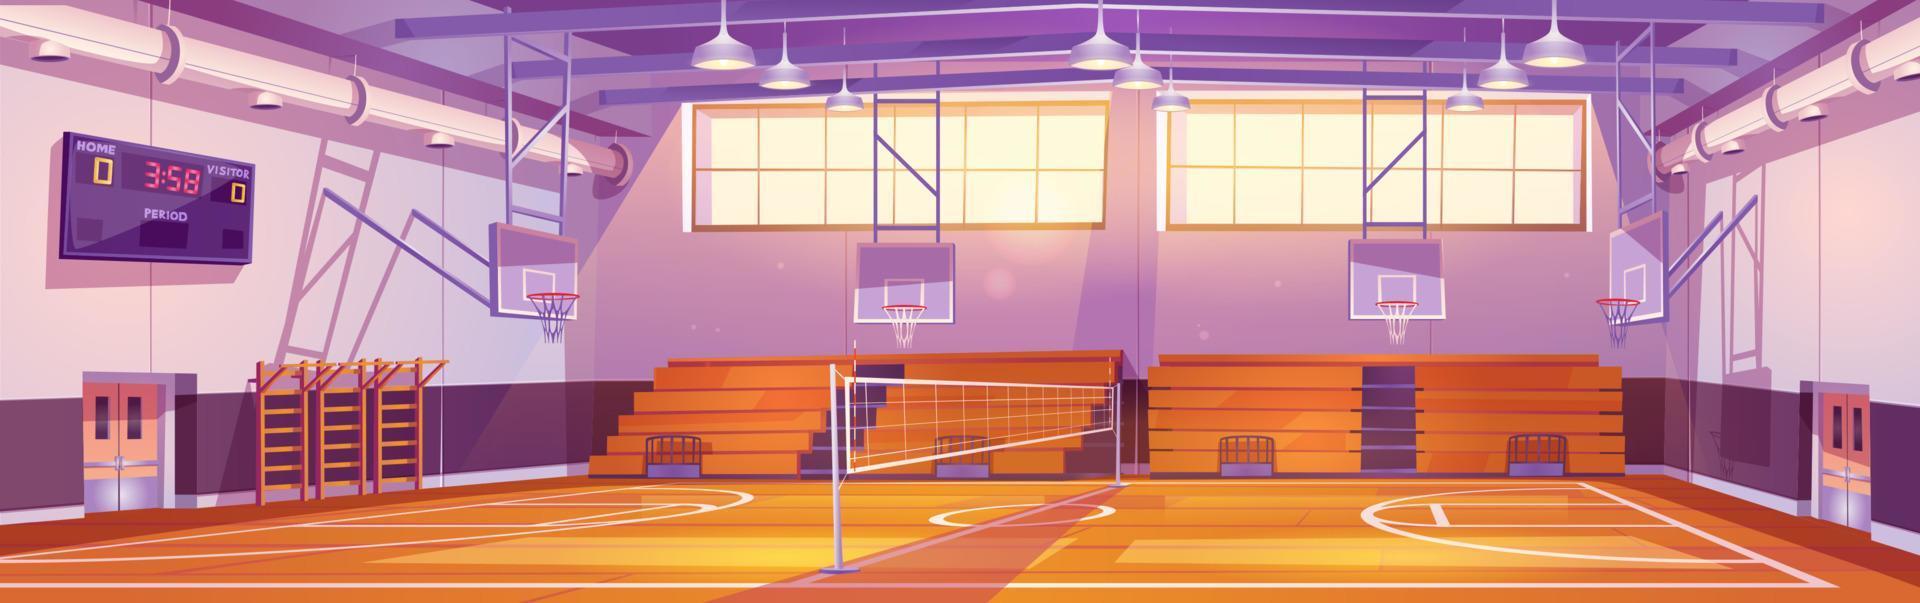 illustration de dessin animé de terrain de basket vide vecteur